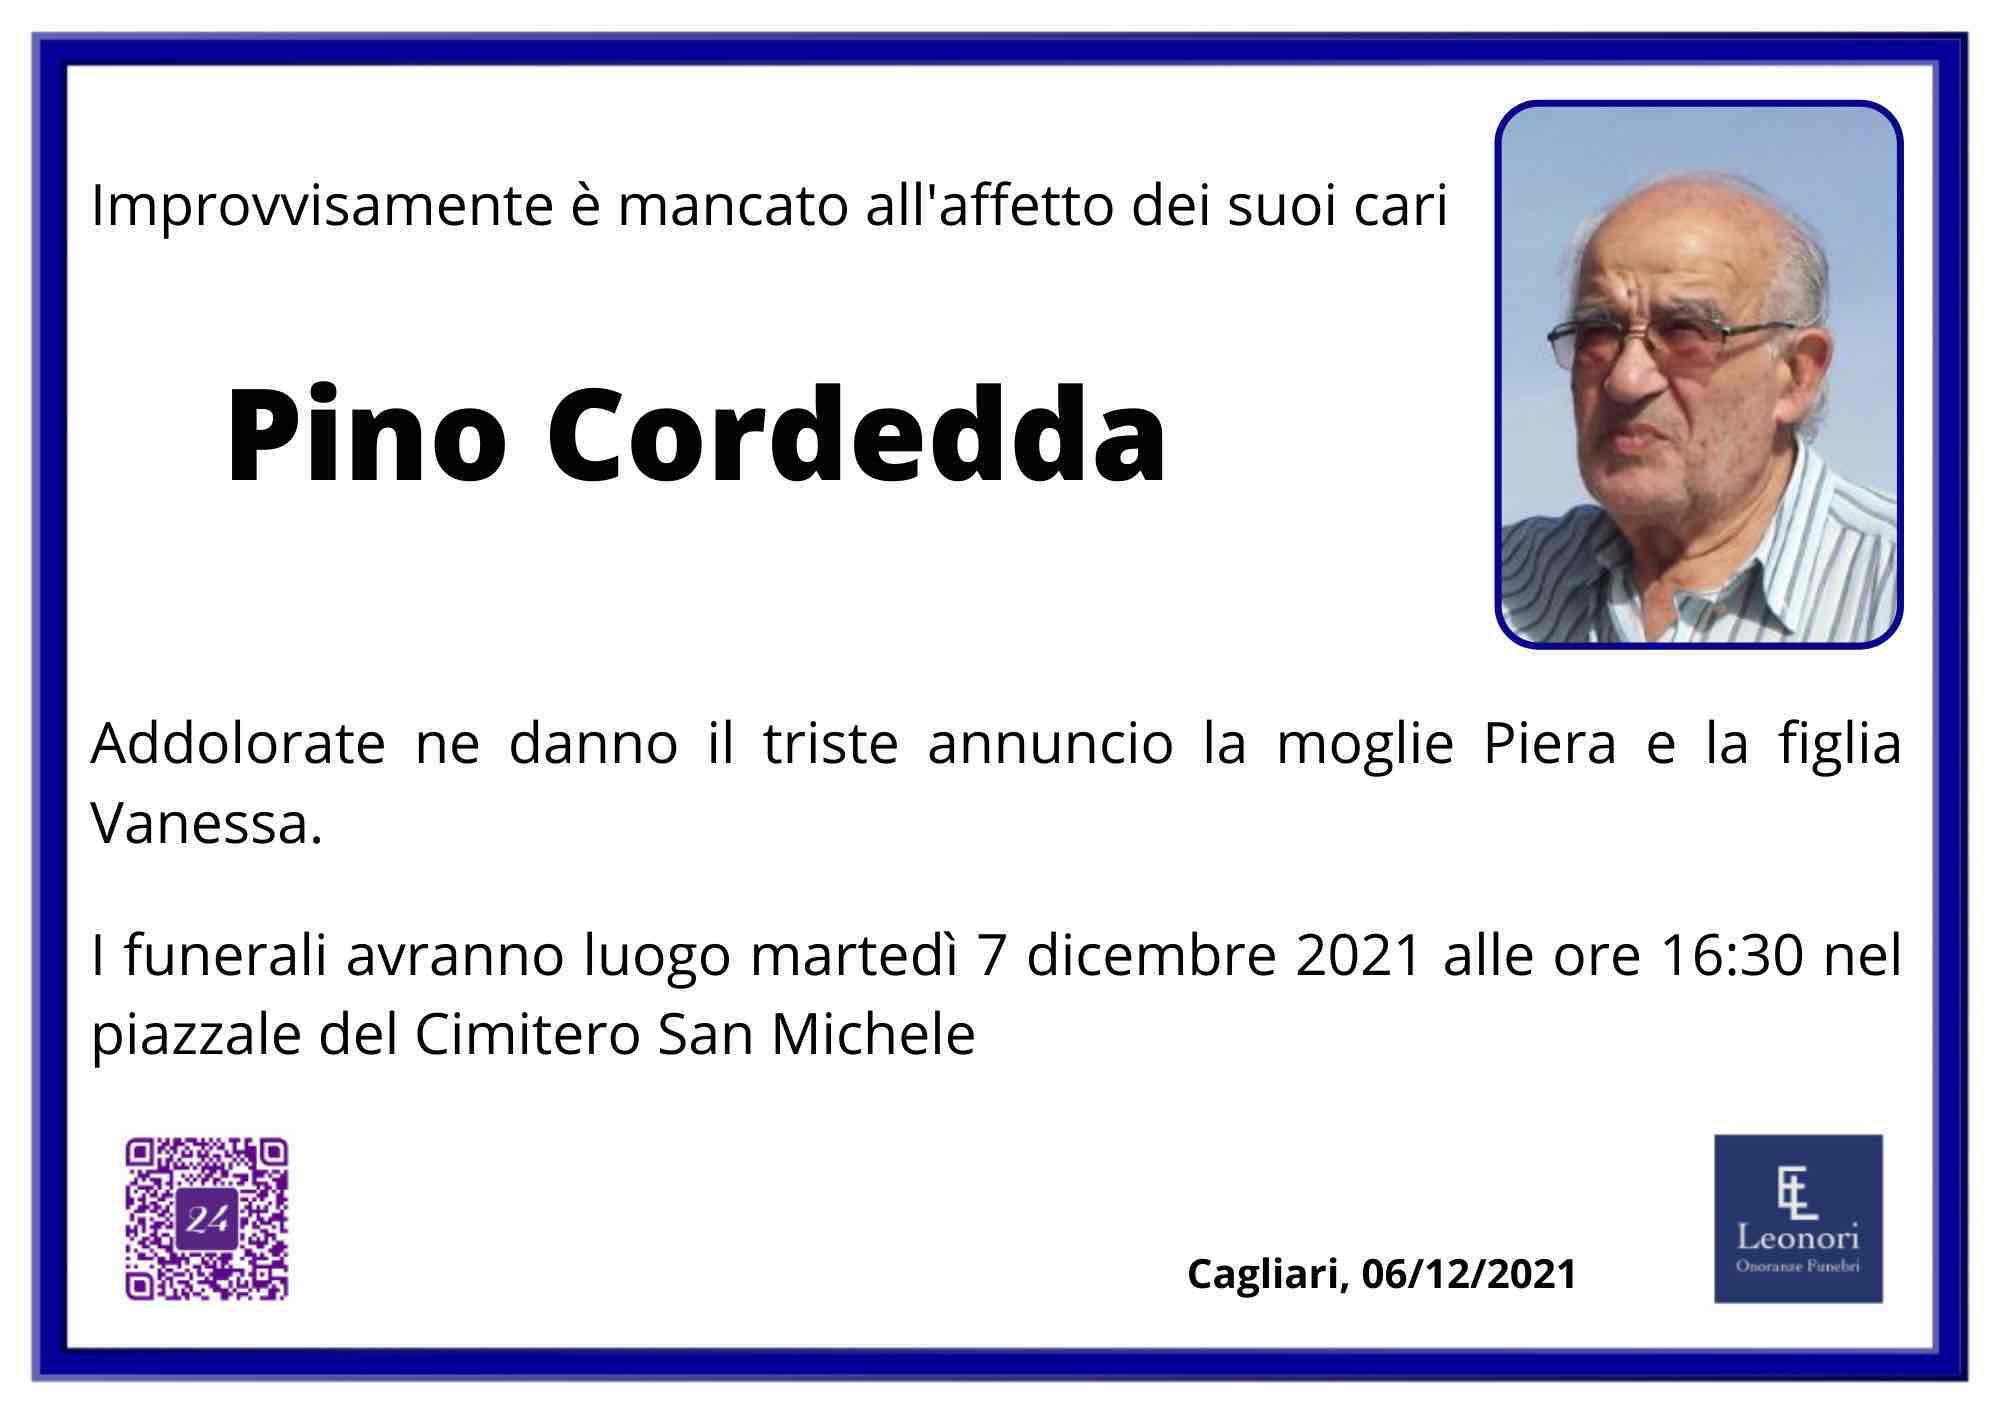 Giuseppe Cordedda